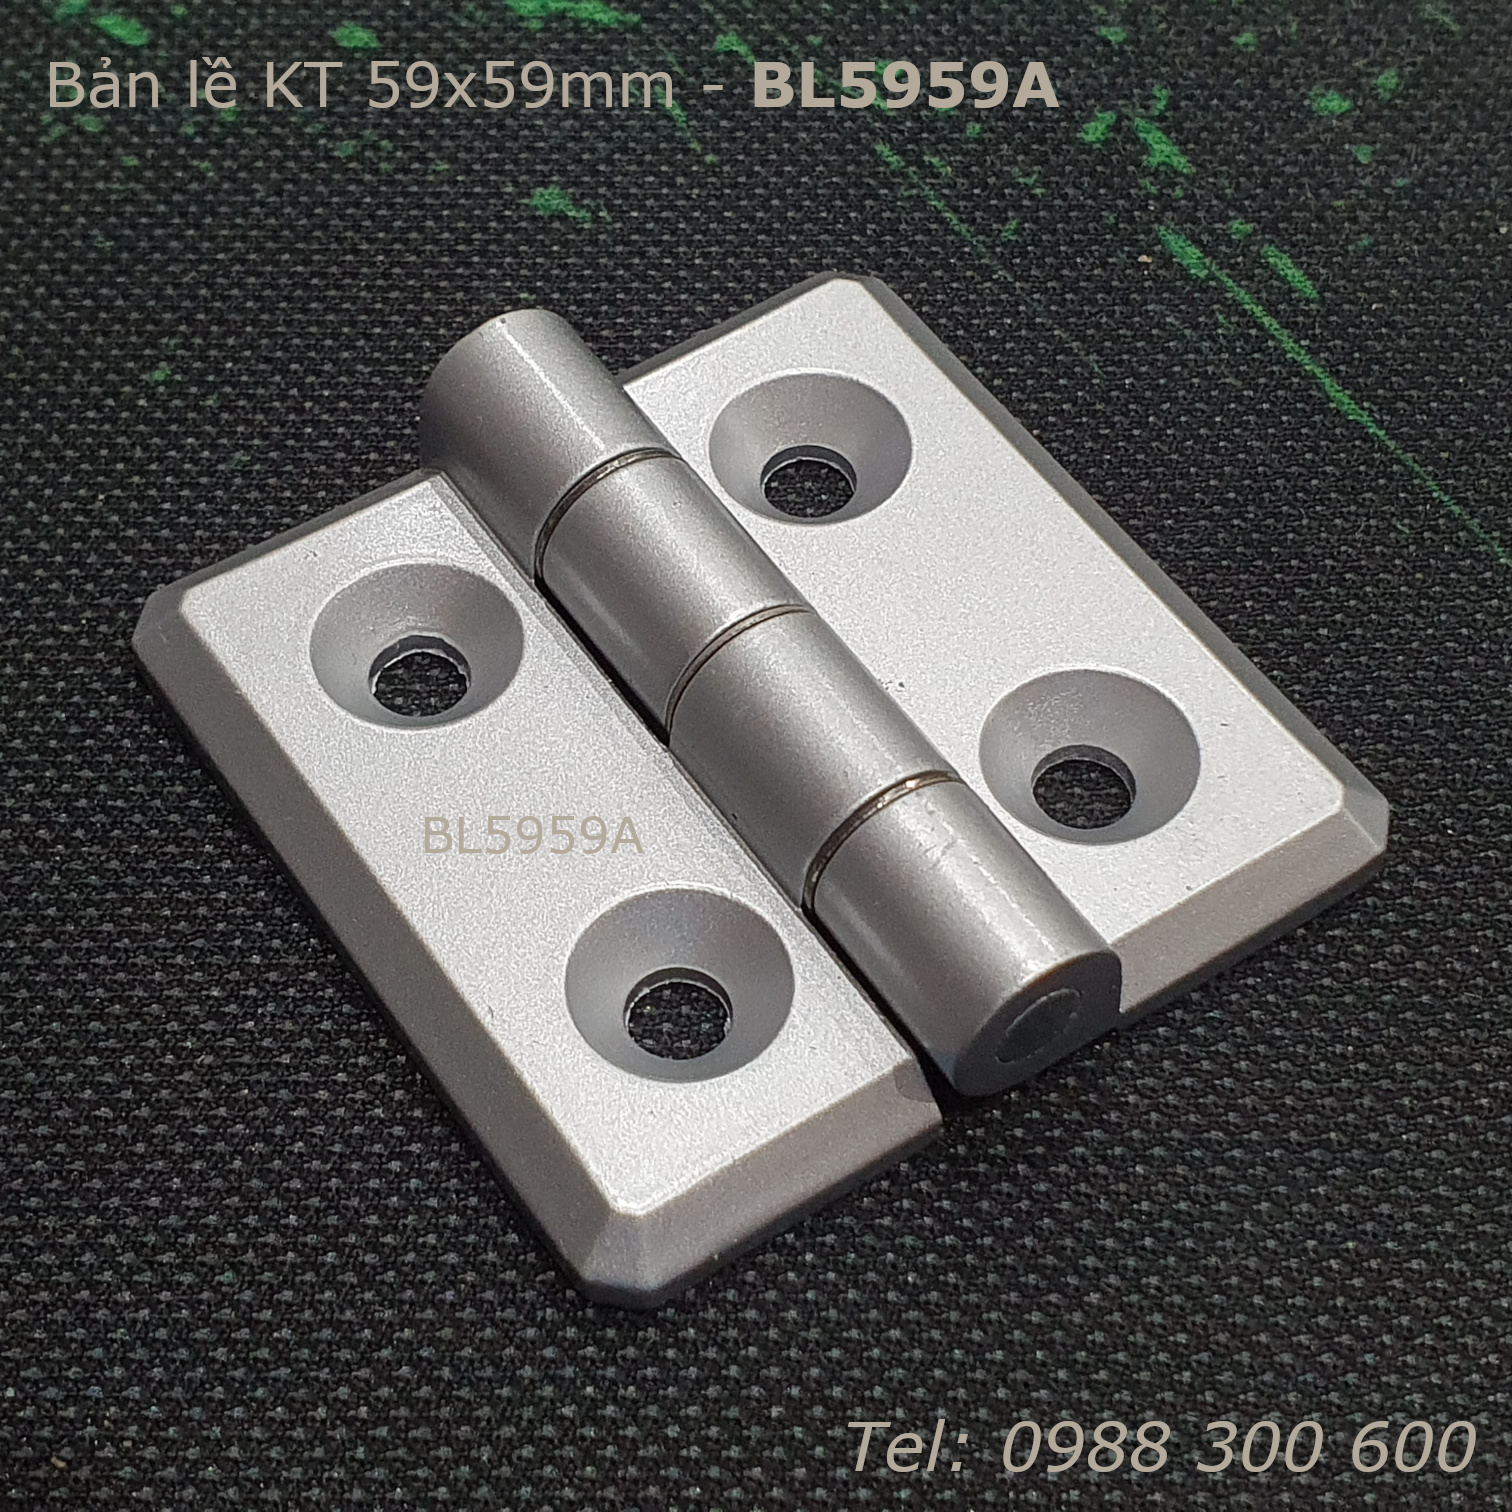 Bản lề hợp kim kẽm KT 59x59, dày 5mm - BL5959A